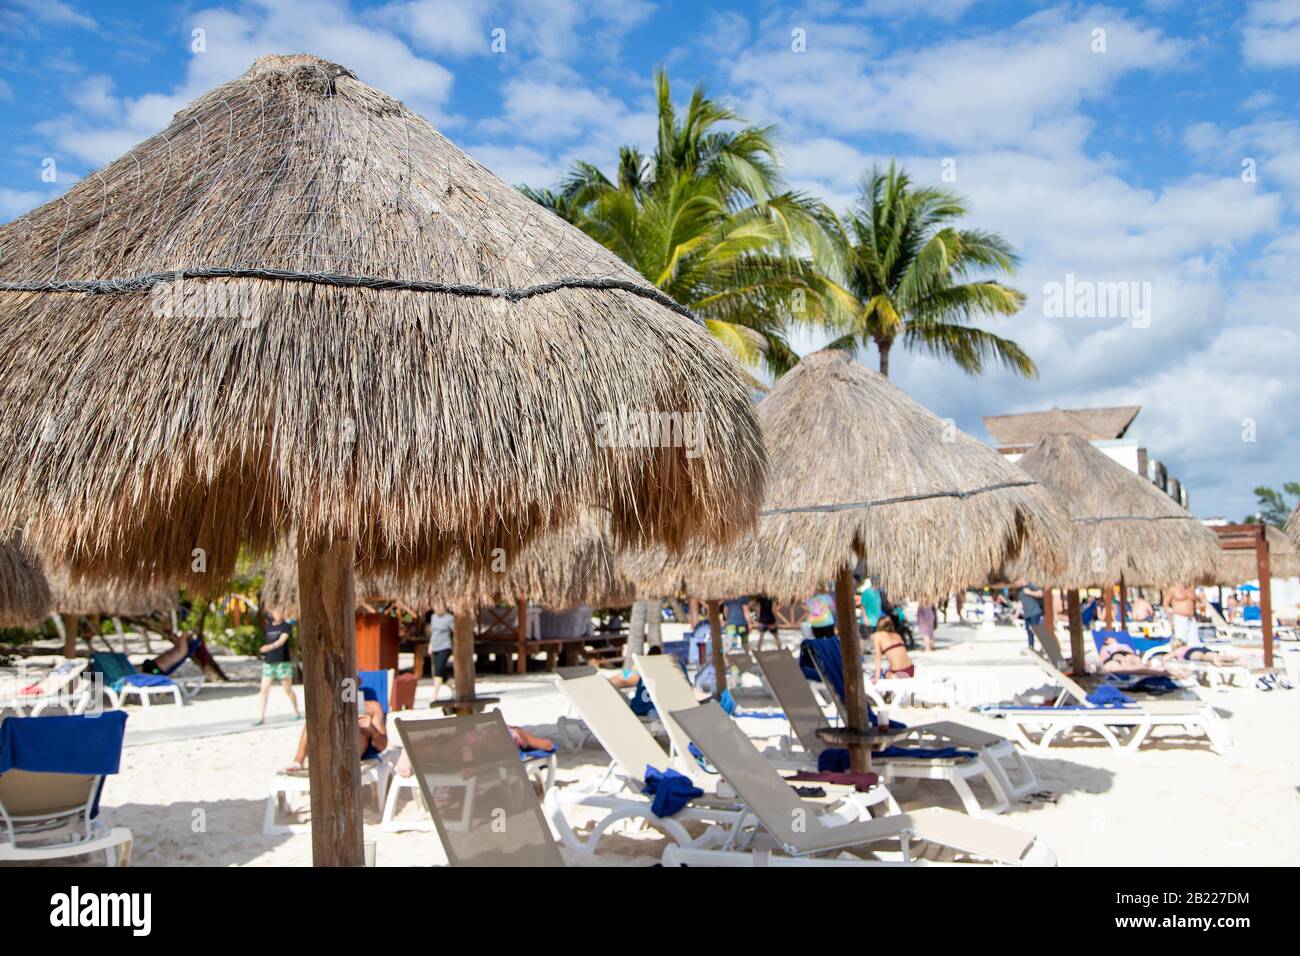 Nahaufnahme des Sonnenschirms mit Kokospalmenblatt und nicht erkennbaren Strandgängern, die sich in einer Entfernung an einem Cancun-Strand an der Riviera Maya in der Karibik entspannen Stockfoto